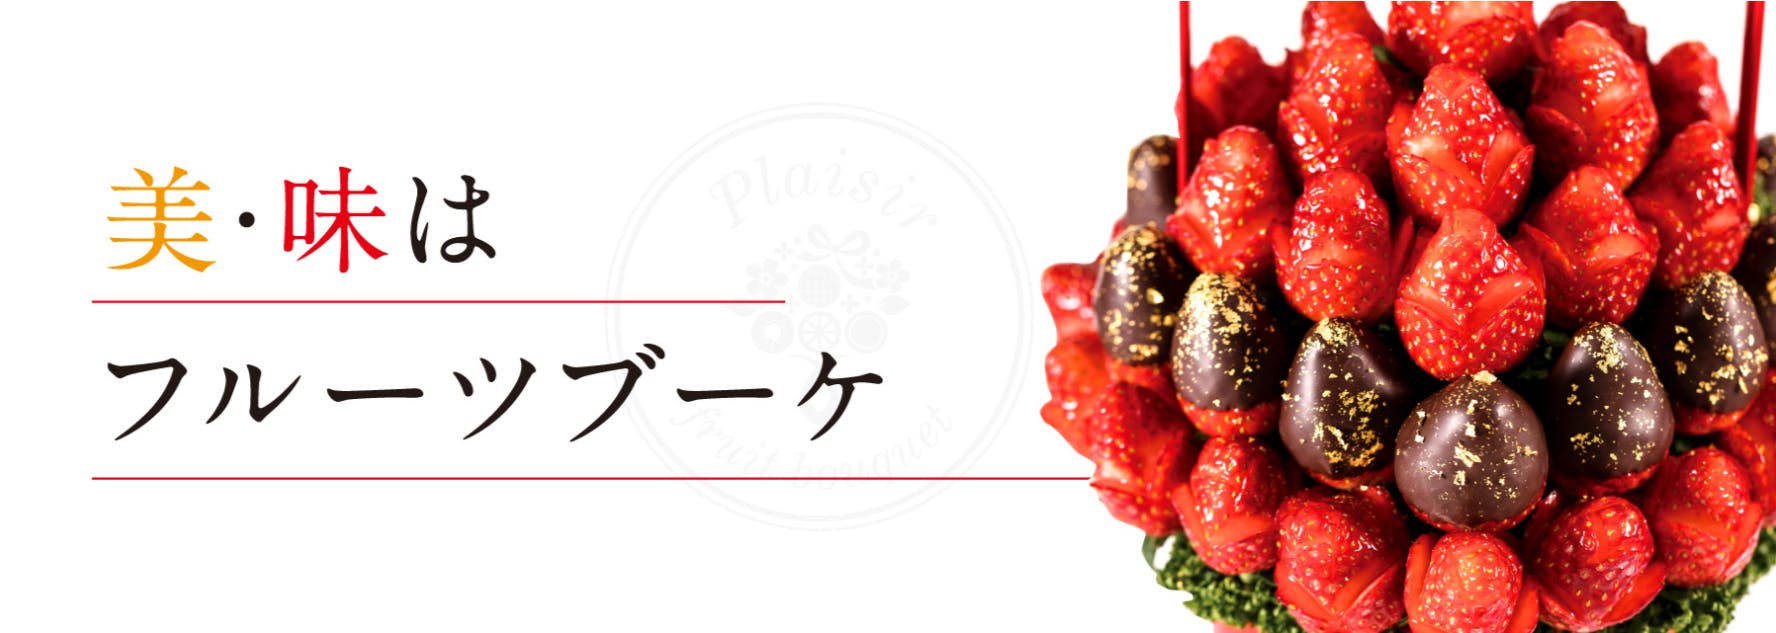 新感覚フルーツギフト 食べられる花束 日本初のフルーツブーケ 専門店 Campfire キャンプファイヤー